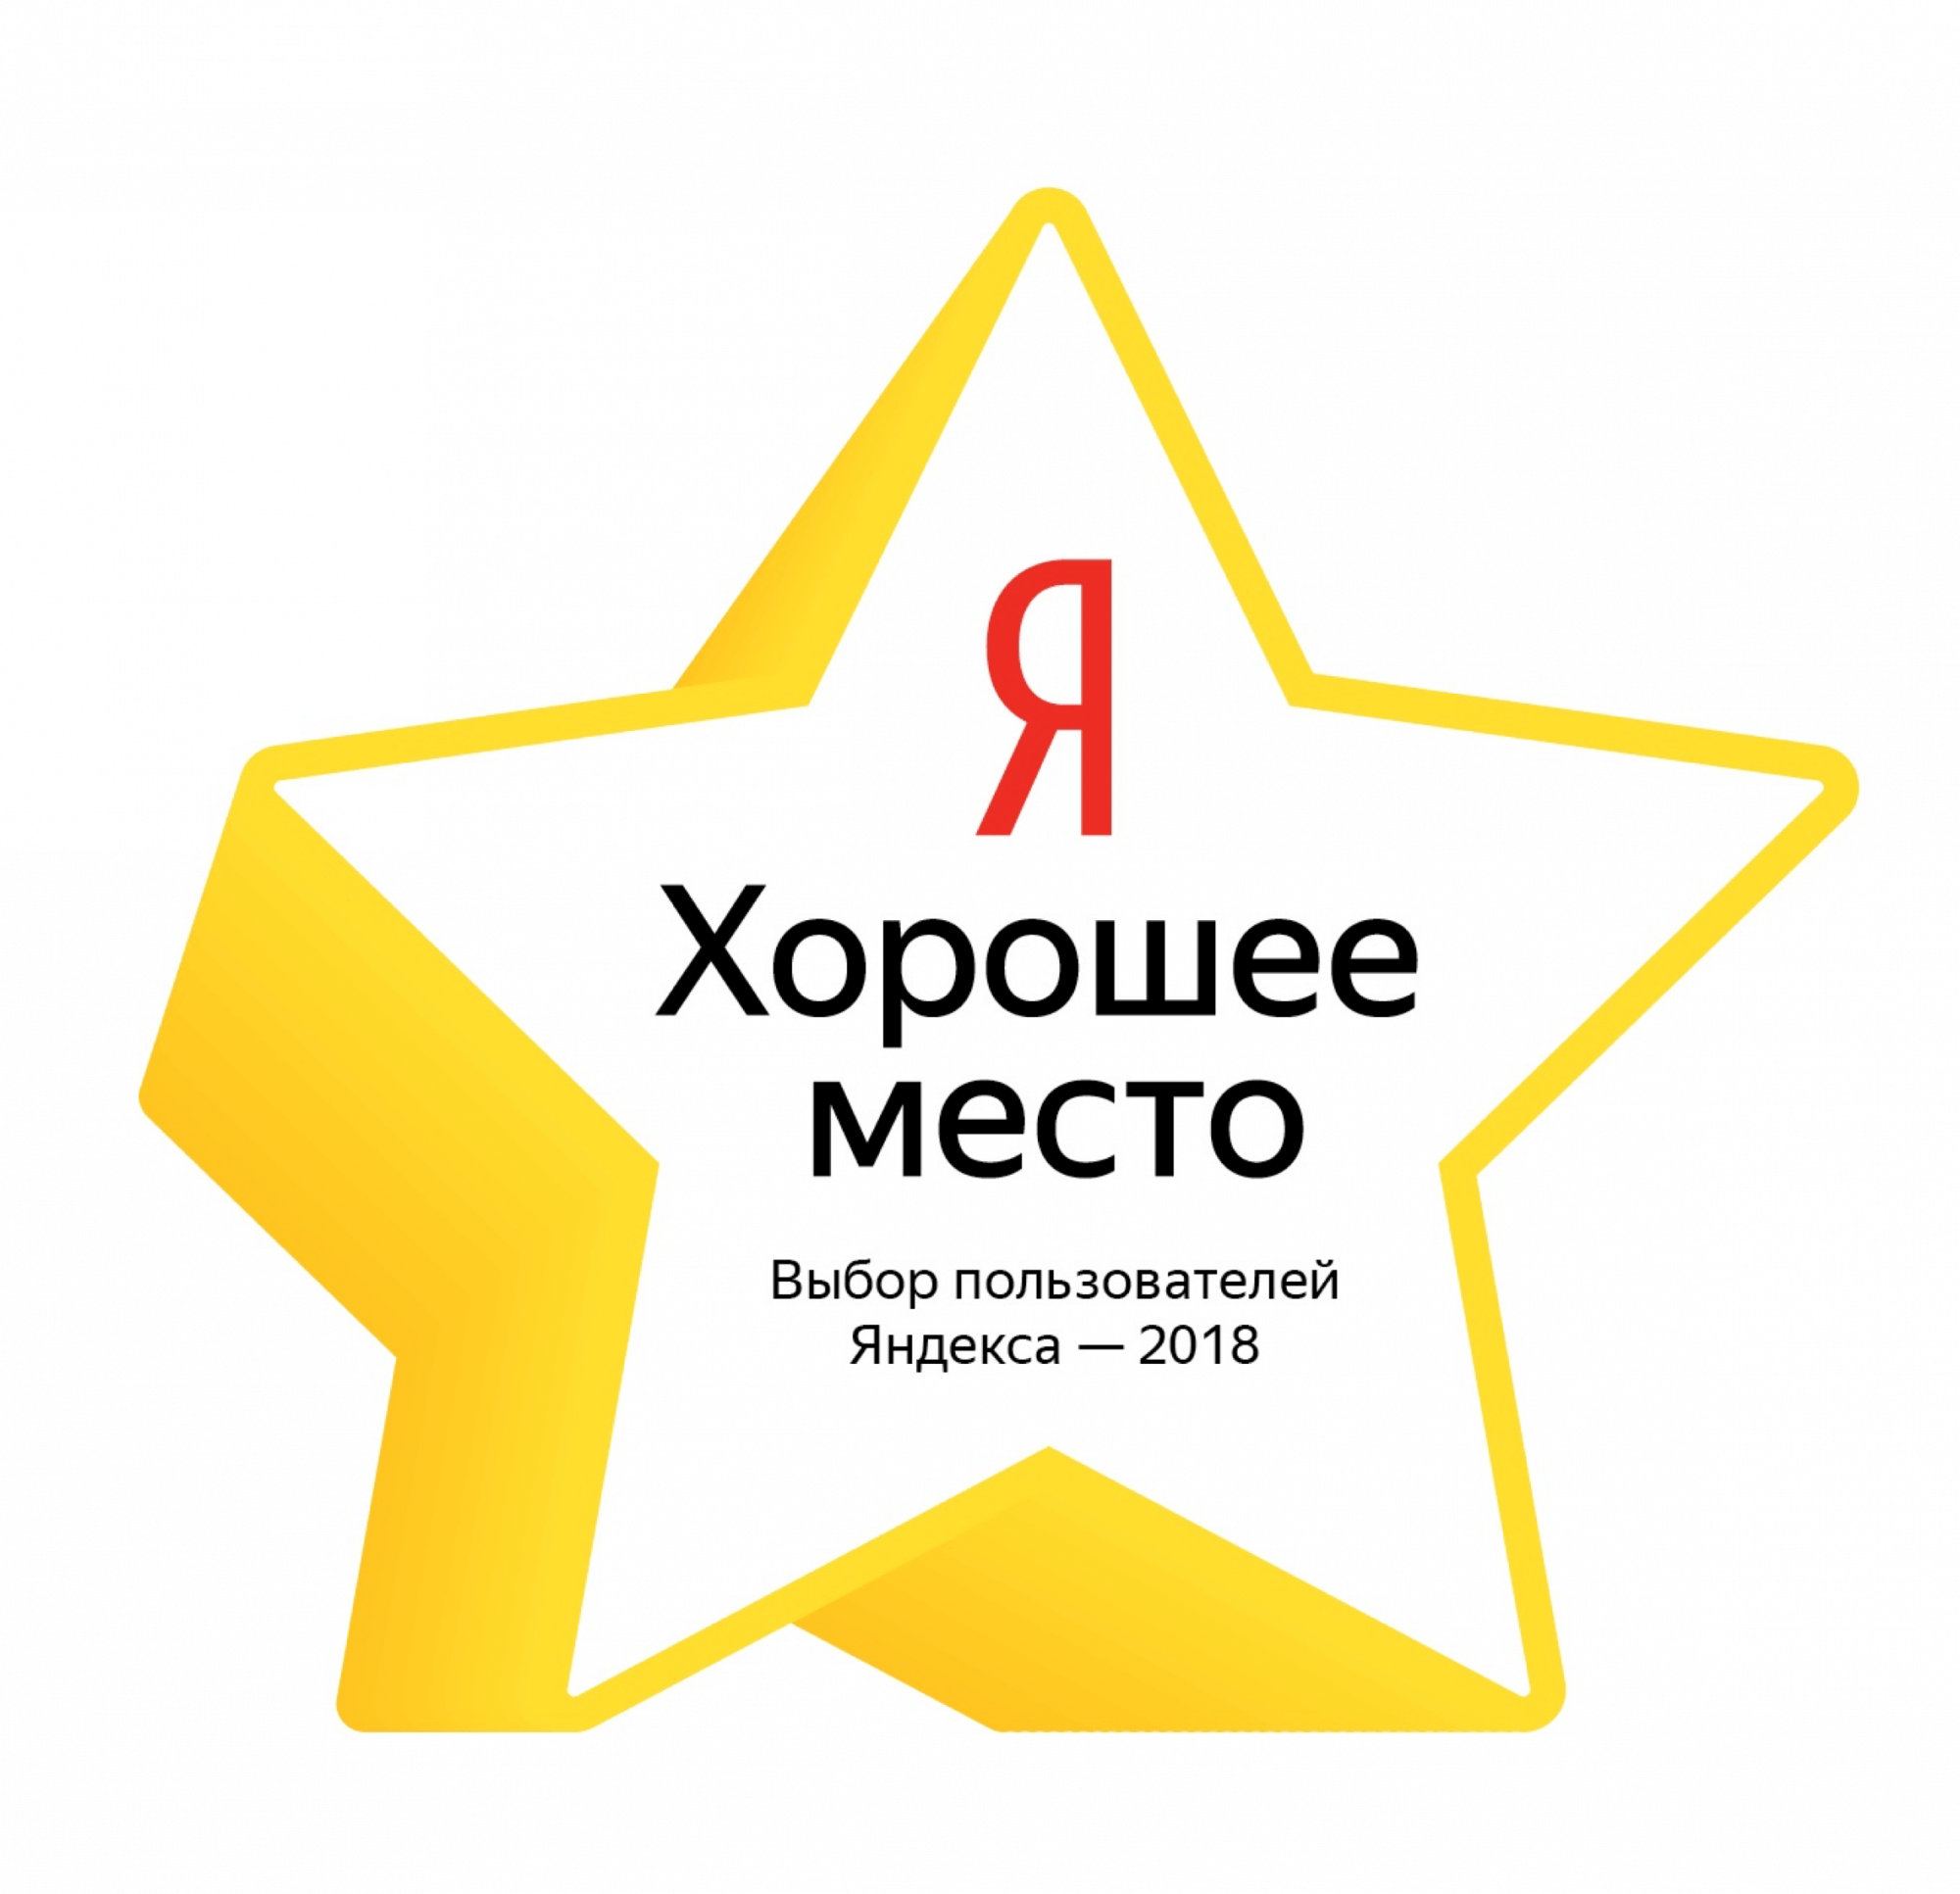 Яндекс начал отмечать лучшие заведения в офлайне